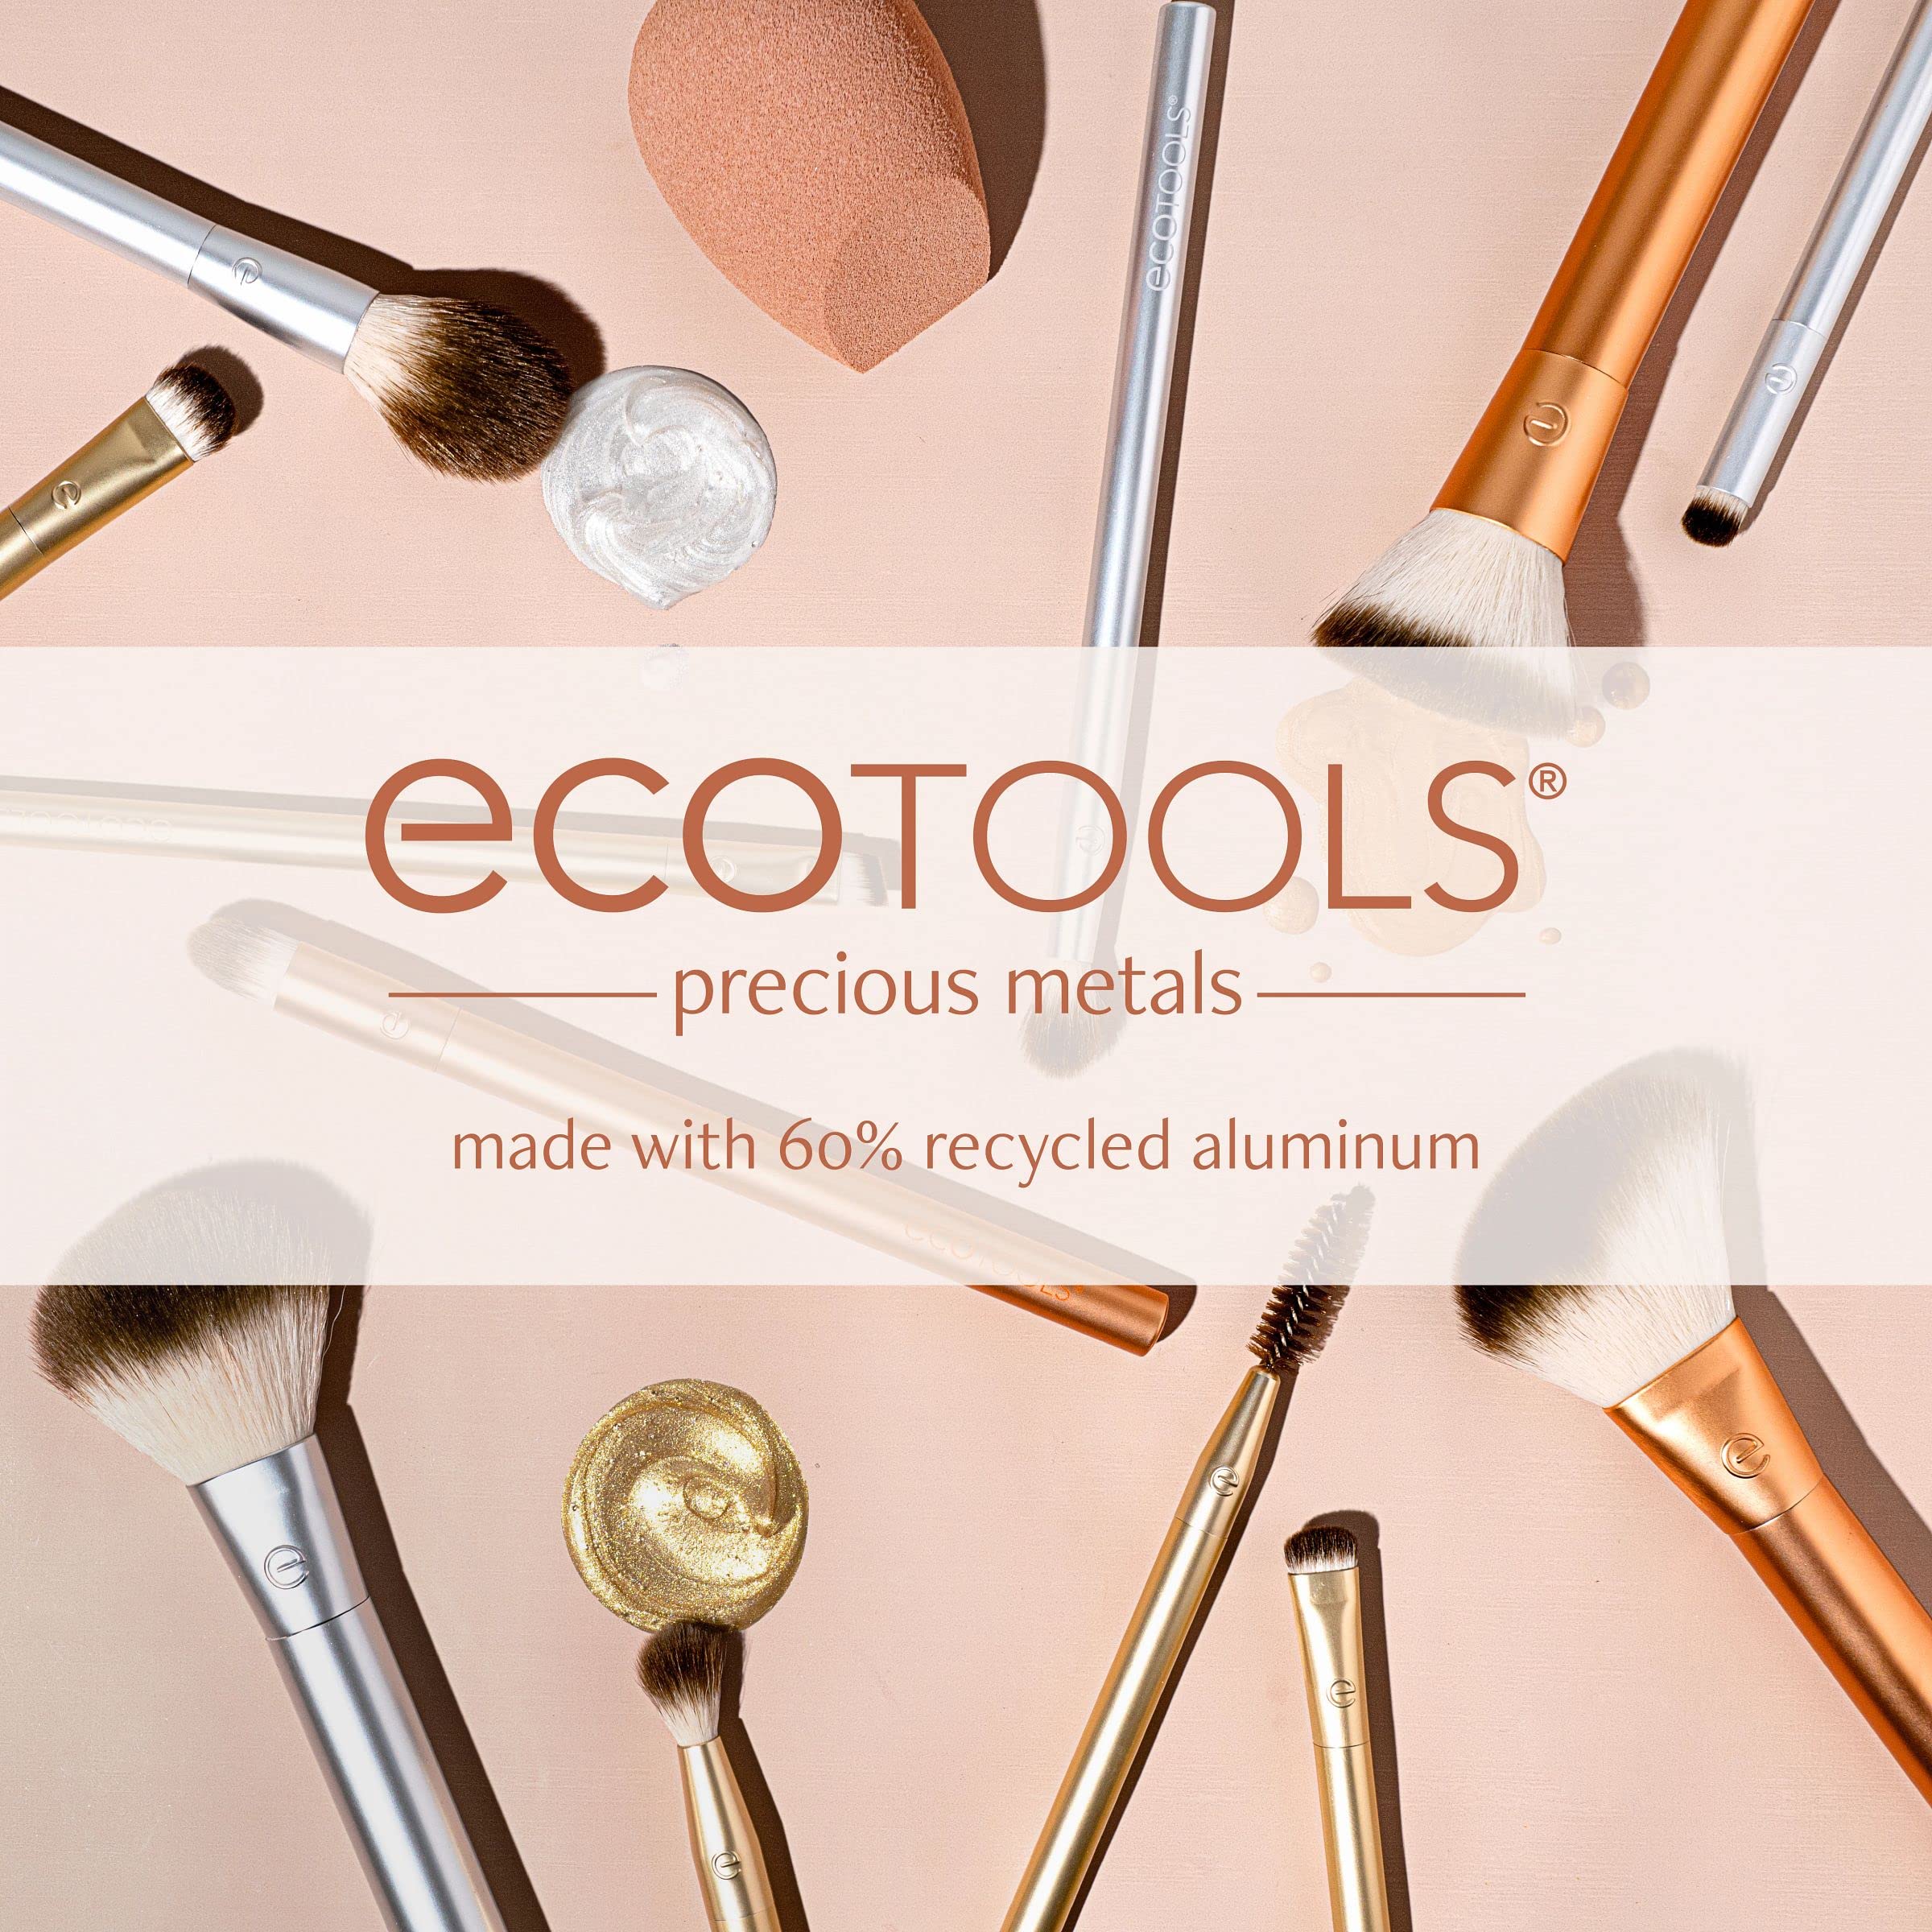 EcoTools Precious Metals Face Blend & Sculpt Set, Makeup Brush Kit, Foundation Brush, Ecofriendly Makeup Brush Kit, Recycled Aluminum, Chrome, Precision, 4 Piece Set